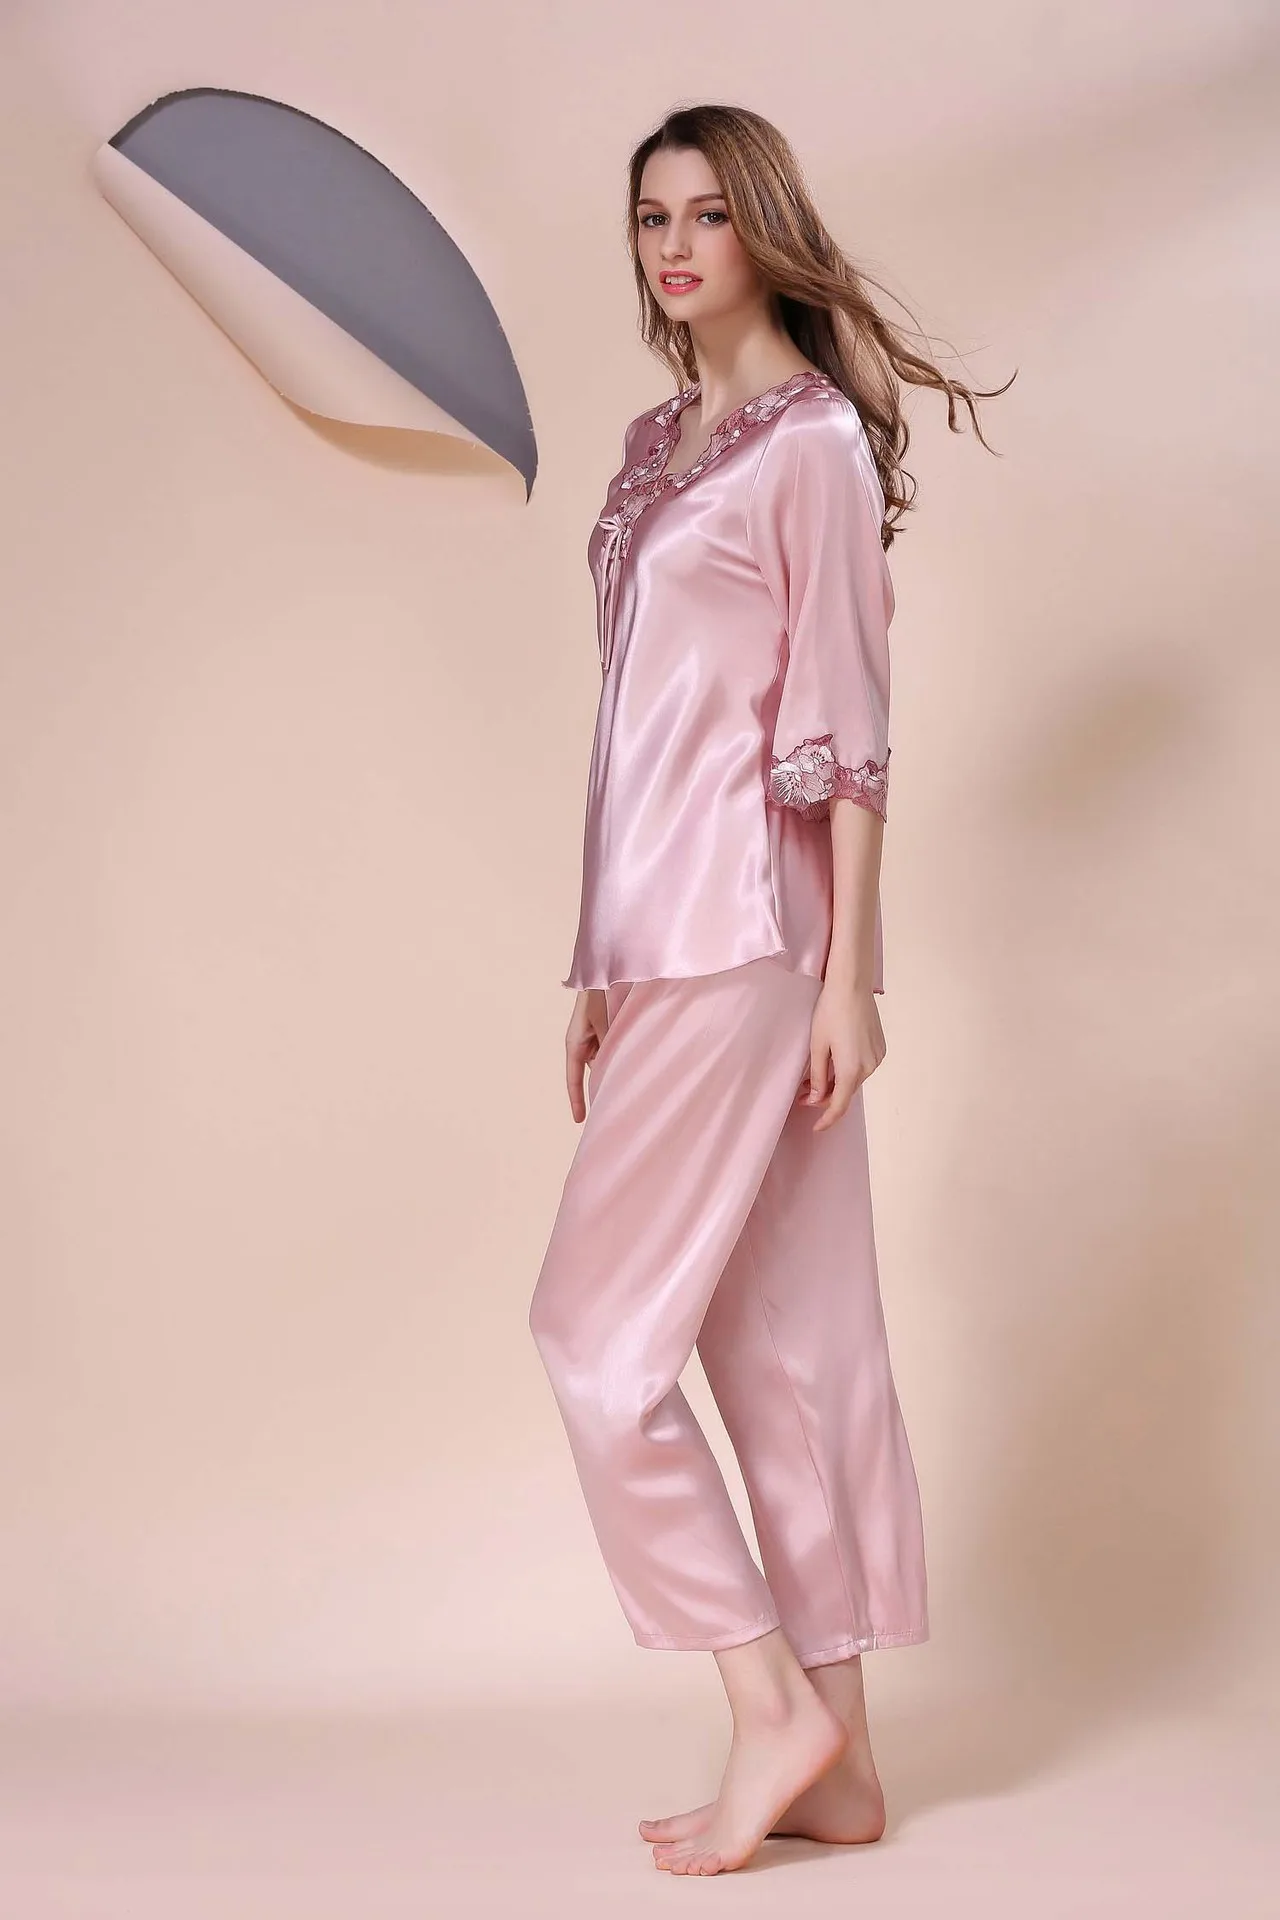 Сексуальная пижама, Женский пижамный комплект, шелковые пижамы для женщин, одежда для сна, розовая Дамская пижама с длинным рукавом, комплект из двух предметов, женское белье, женская одежда